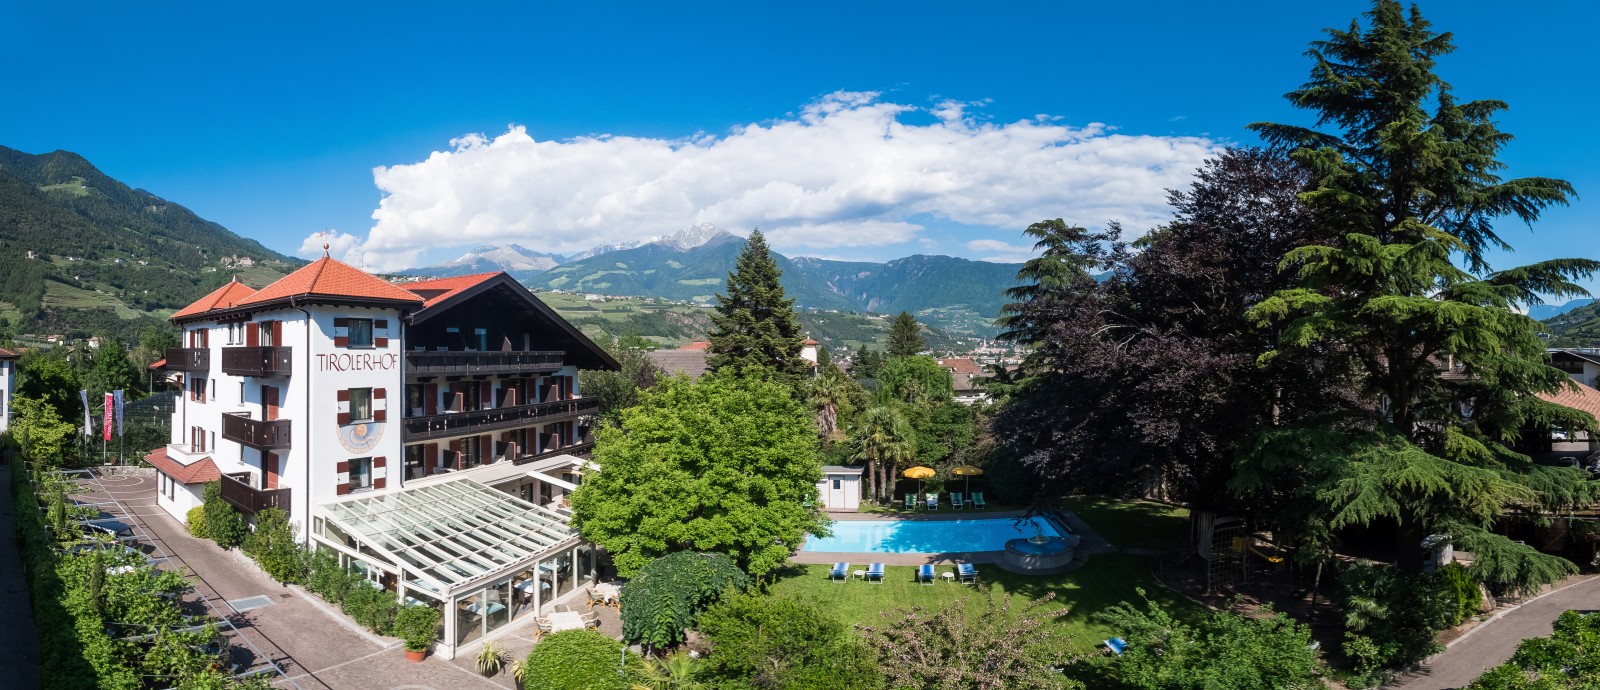 Alpenpanorma und Blick auf das Hotel Tirolerhof